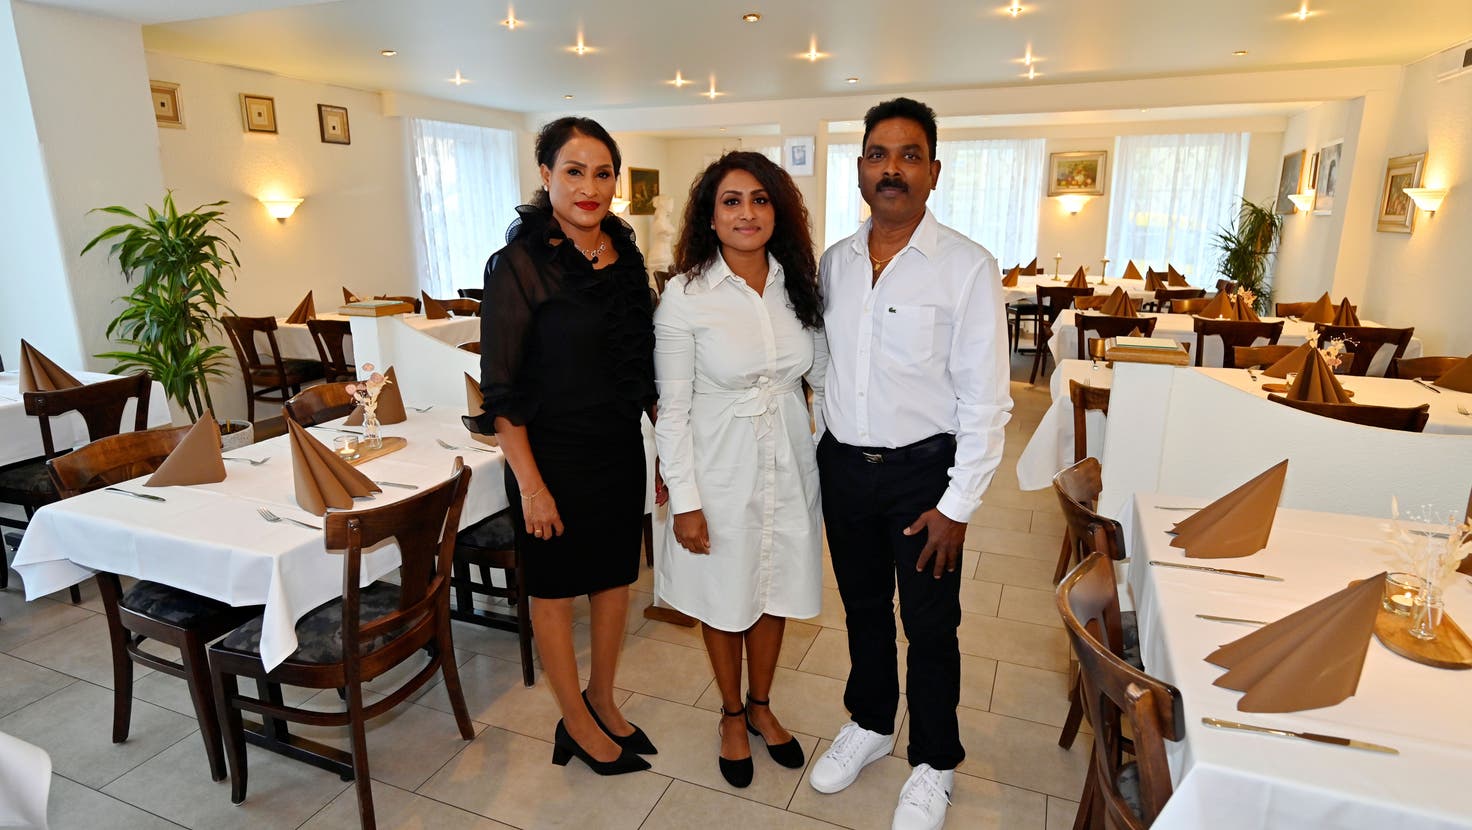 Die Familie Arumugam leitet neu das Restaurant Mazzini in Grenchen. Geschäftsführerin soll Tochter Vasu Arumugam werden. Von links: Amutha, Vasu und Sri Arumugam. (Bild: Oliver Menge)